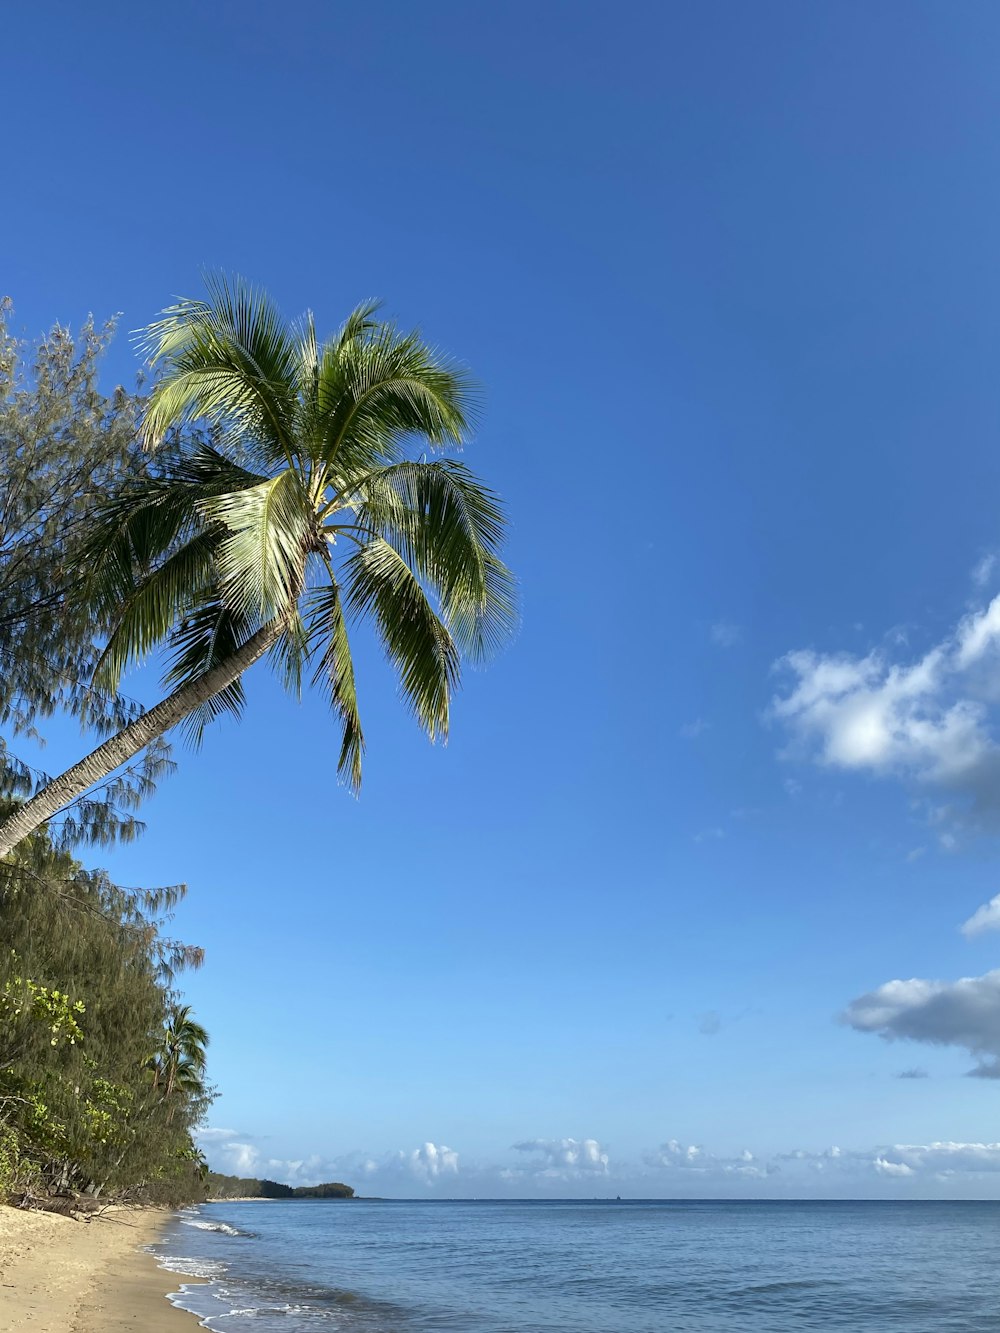 a palm tree on a beach near the ocean